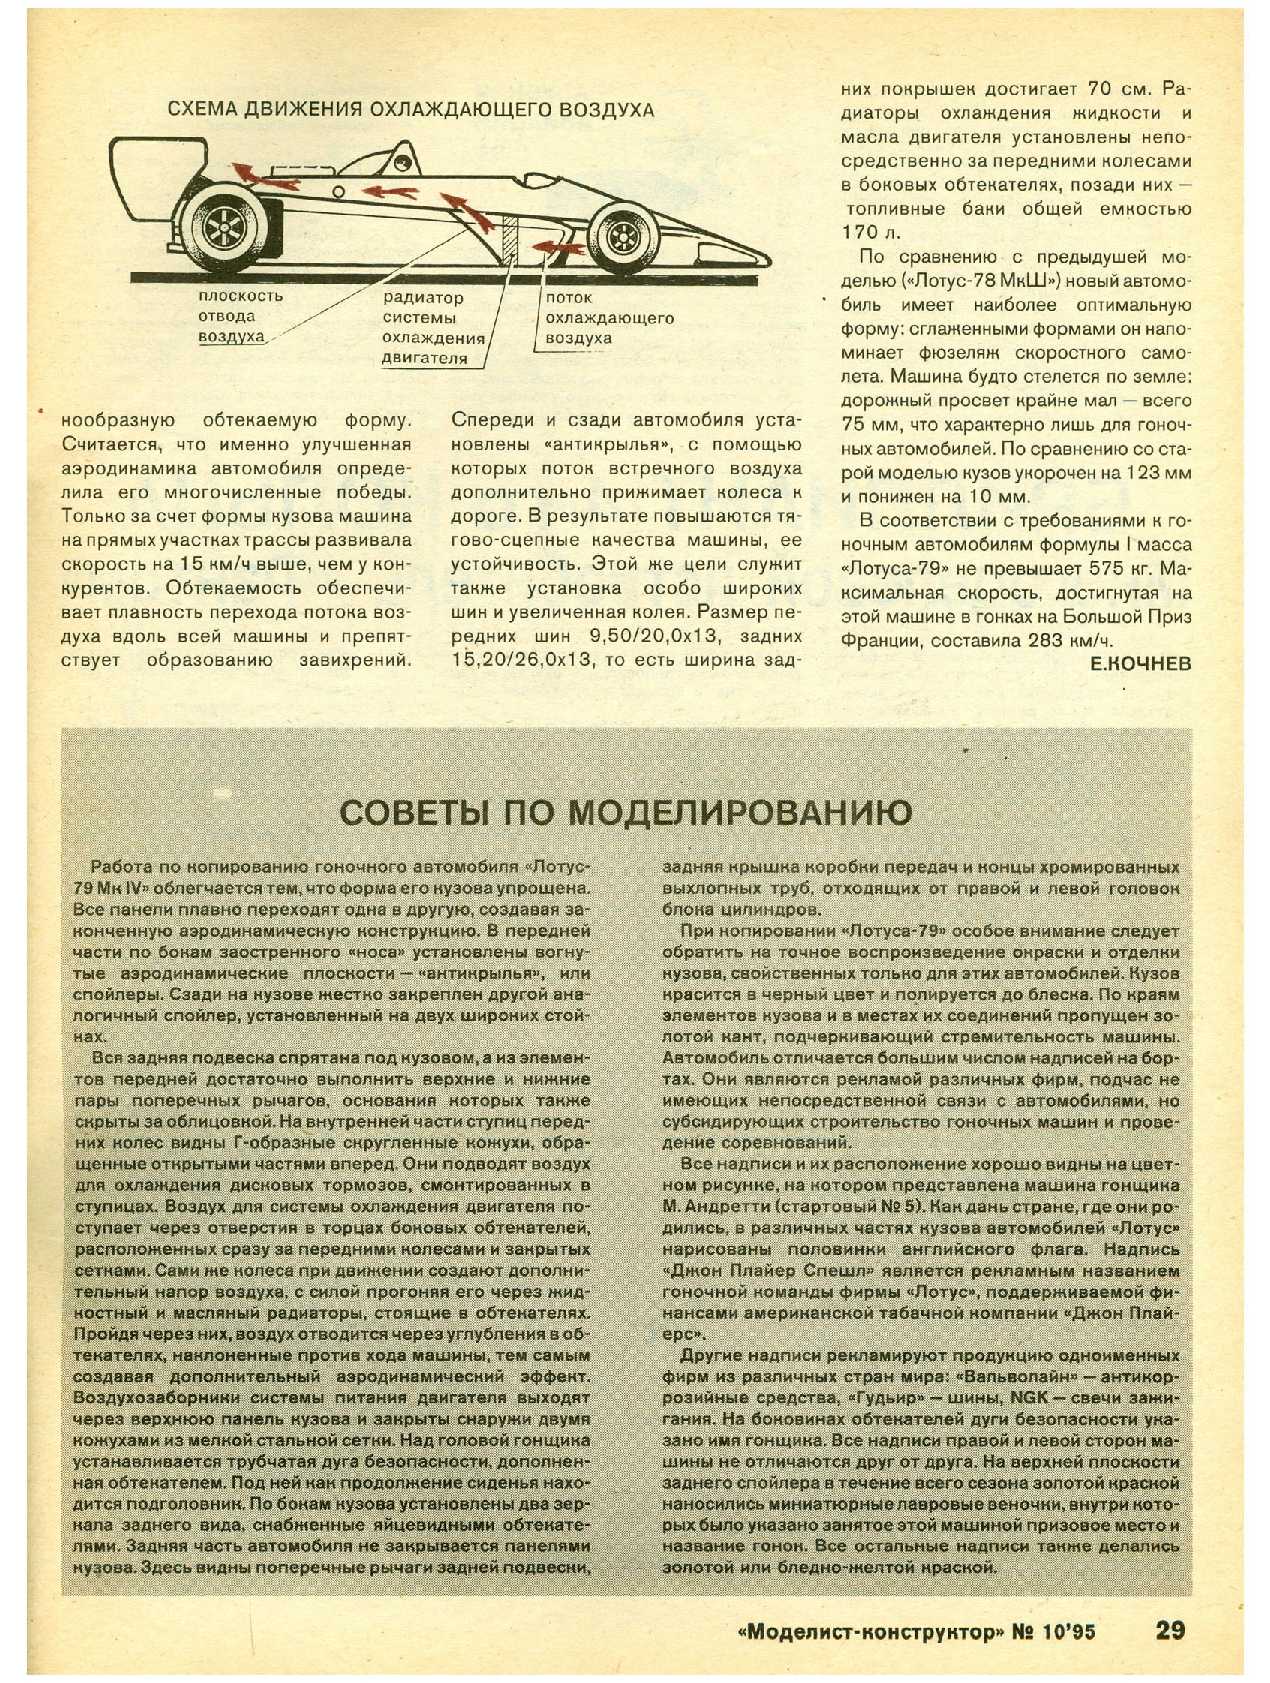 МК 10, 1995, 29 c.